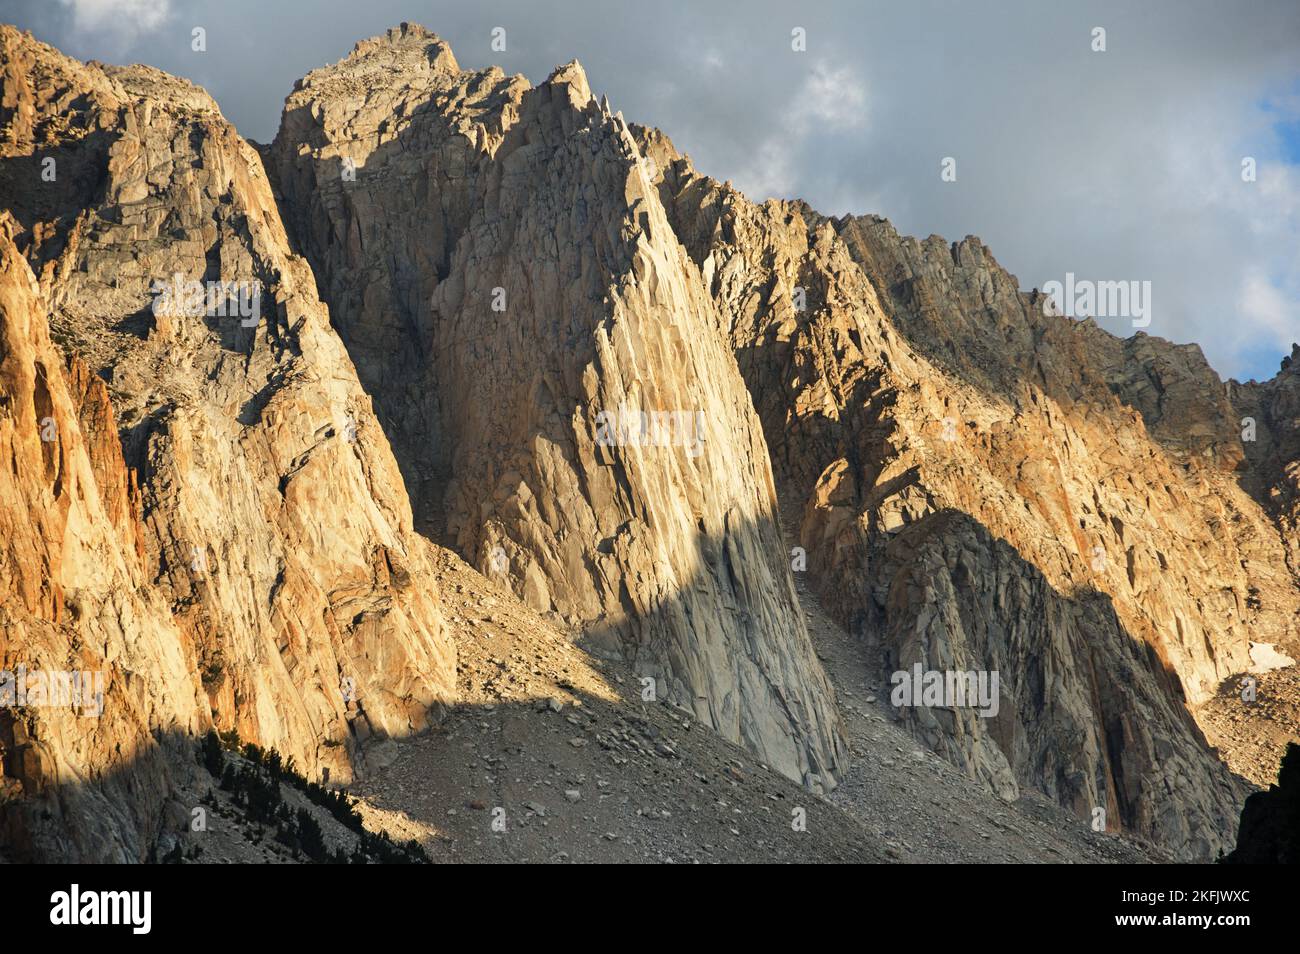 L'incroyable formation de roches Hulk dans les montagnes de la Sierra Nevada près de Bridgeport Californie Banque D'Images